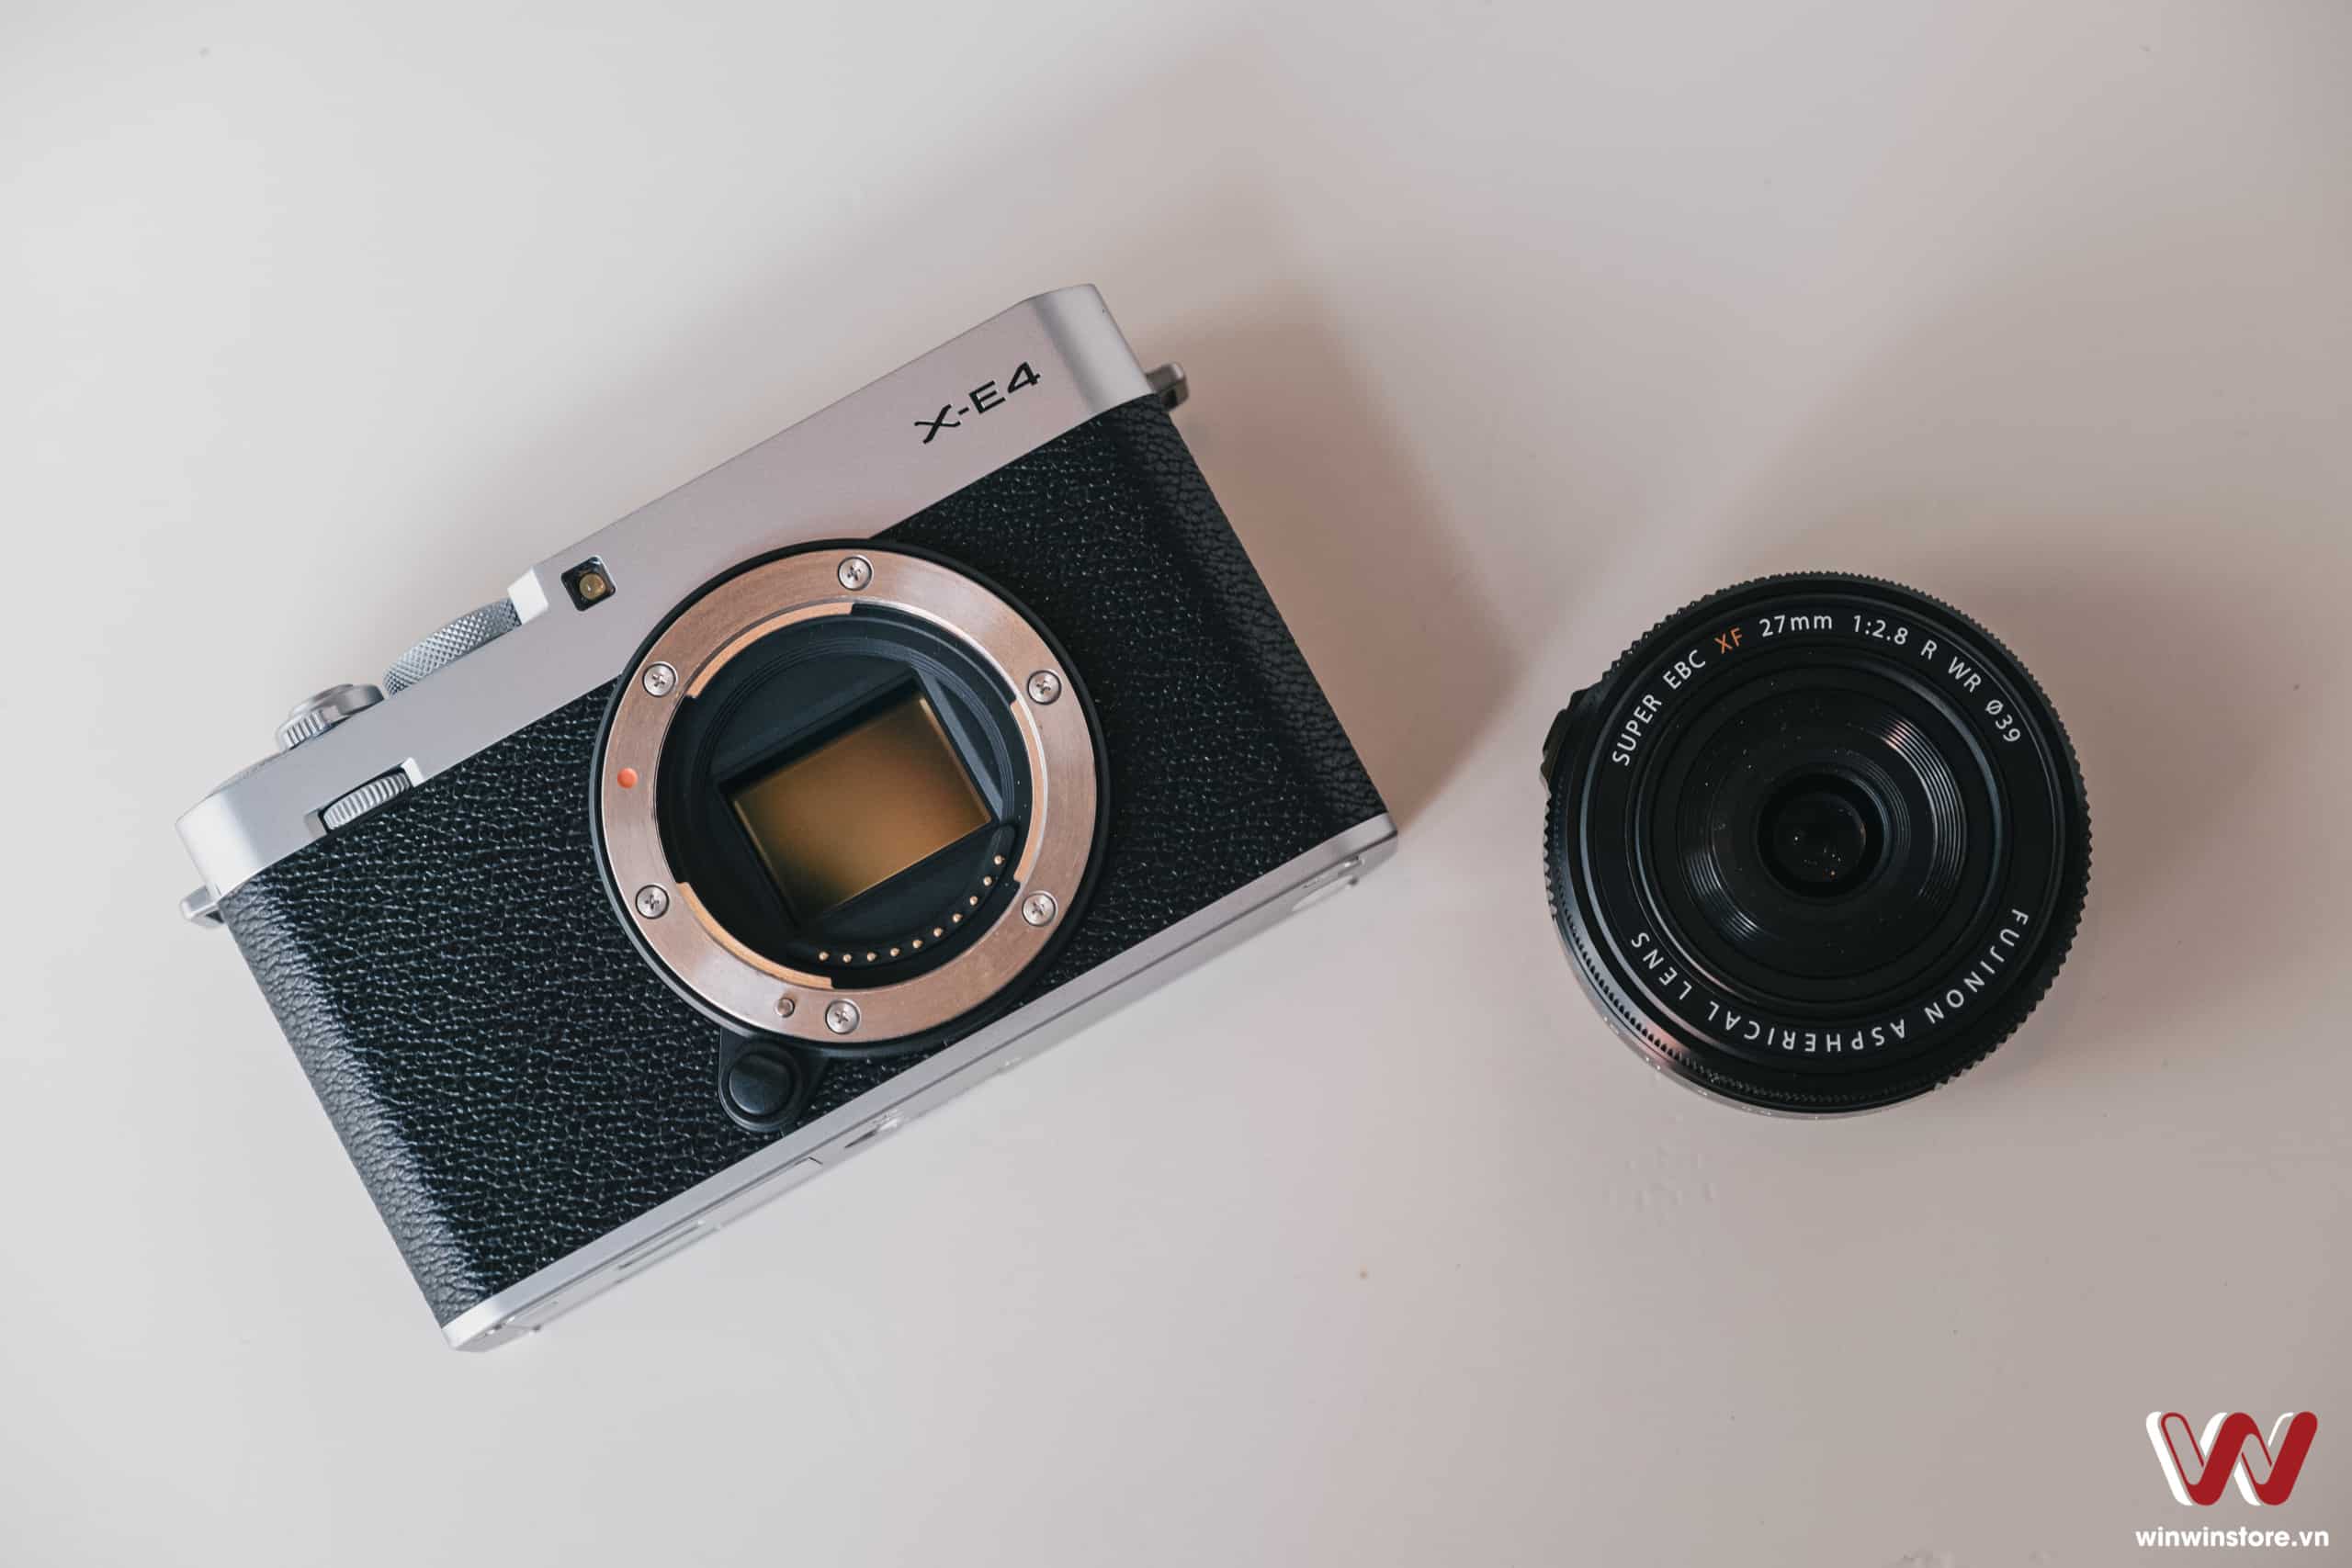 Cần biết những gì trước khi chọn mua chiếc máy ảnh kĩ thuật số đầu tiên cho bạn?